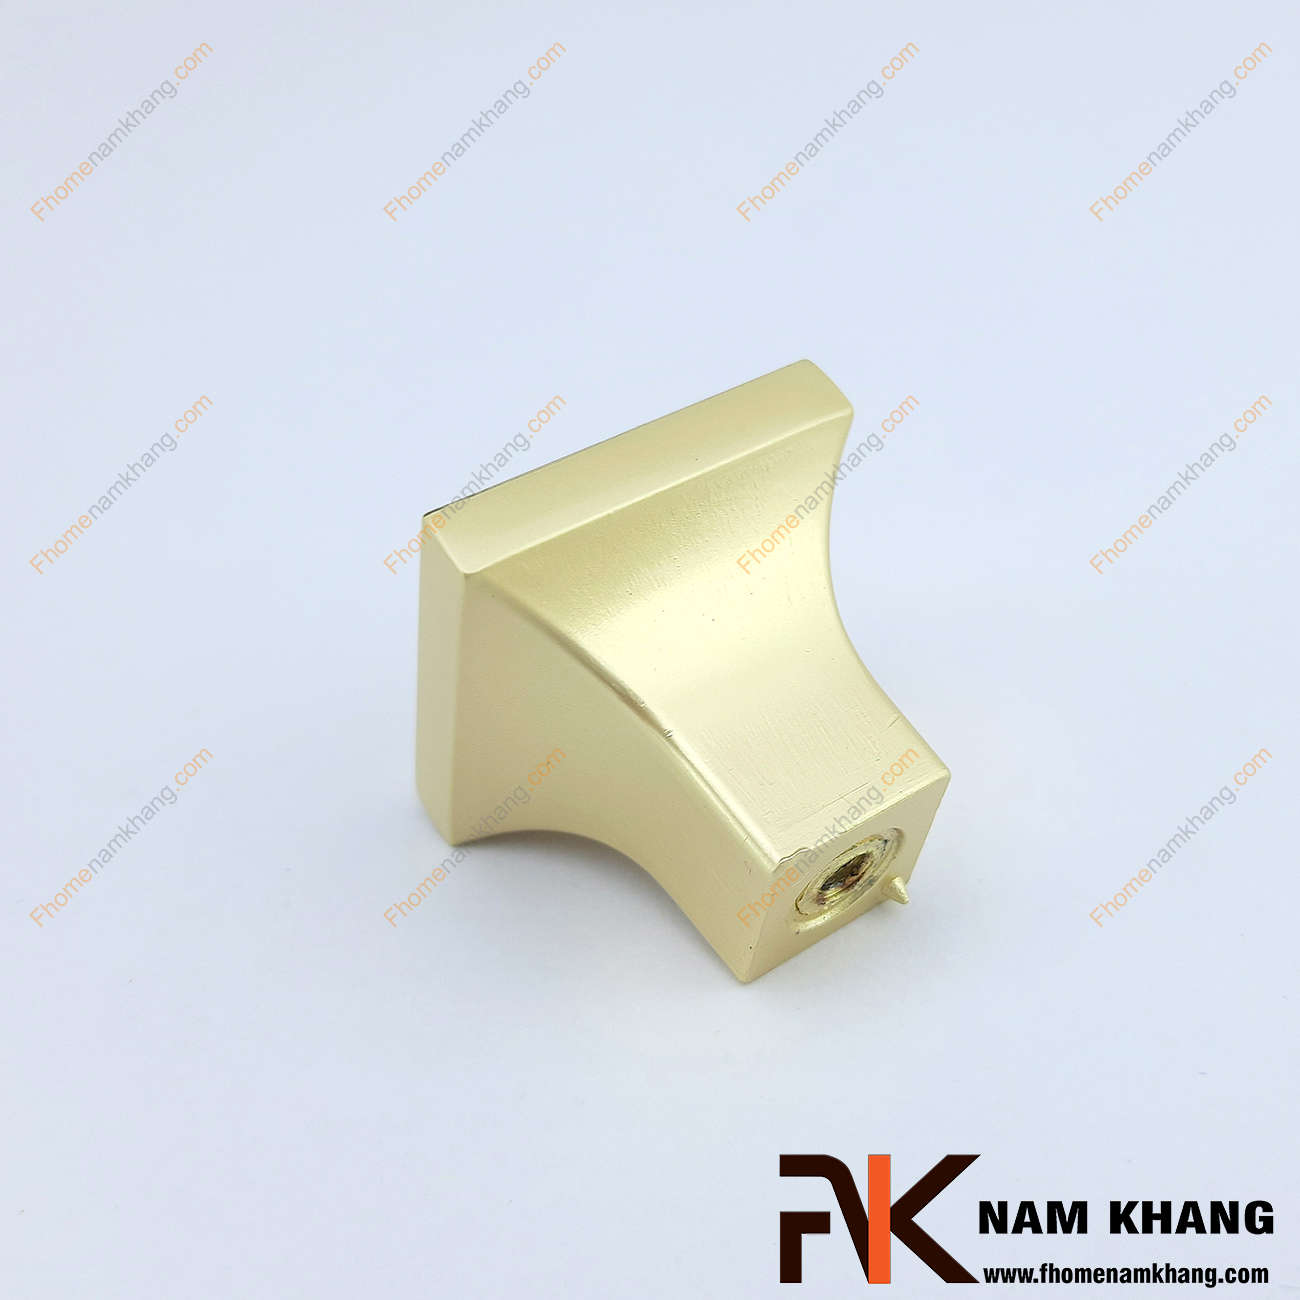 Chất liệu và vẻ ngoài là 2 tiêu chí hàng đầu khi lựa chọn sản phẩm nội thất. Núm cửa tủ vuông màu vàng viền ánh kim NK026-VK được thiết kế tinh tế dạng khối vuông từ hợp kim và được mạ màu đặc trưng để tạo nên vẻ đẹp đặc trưng của một sản phẩm nội thất.